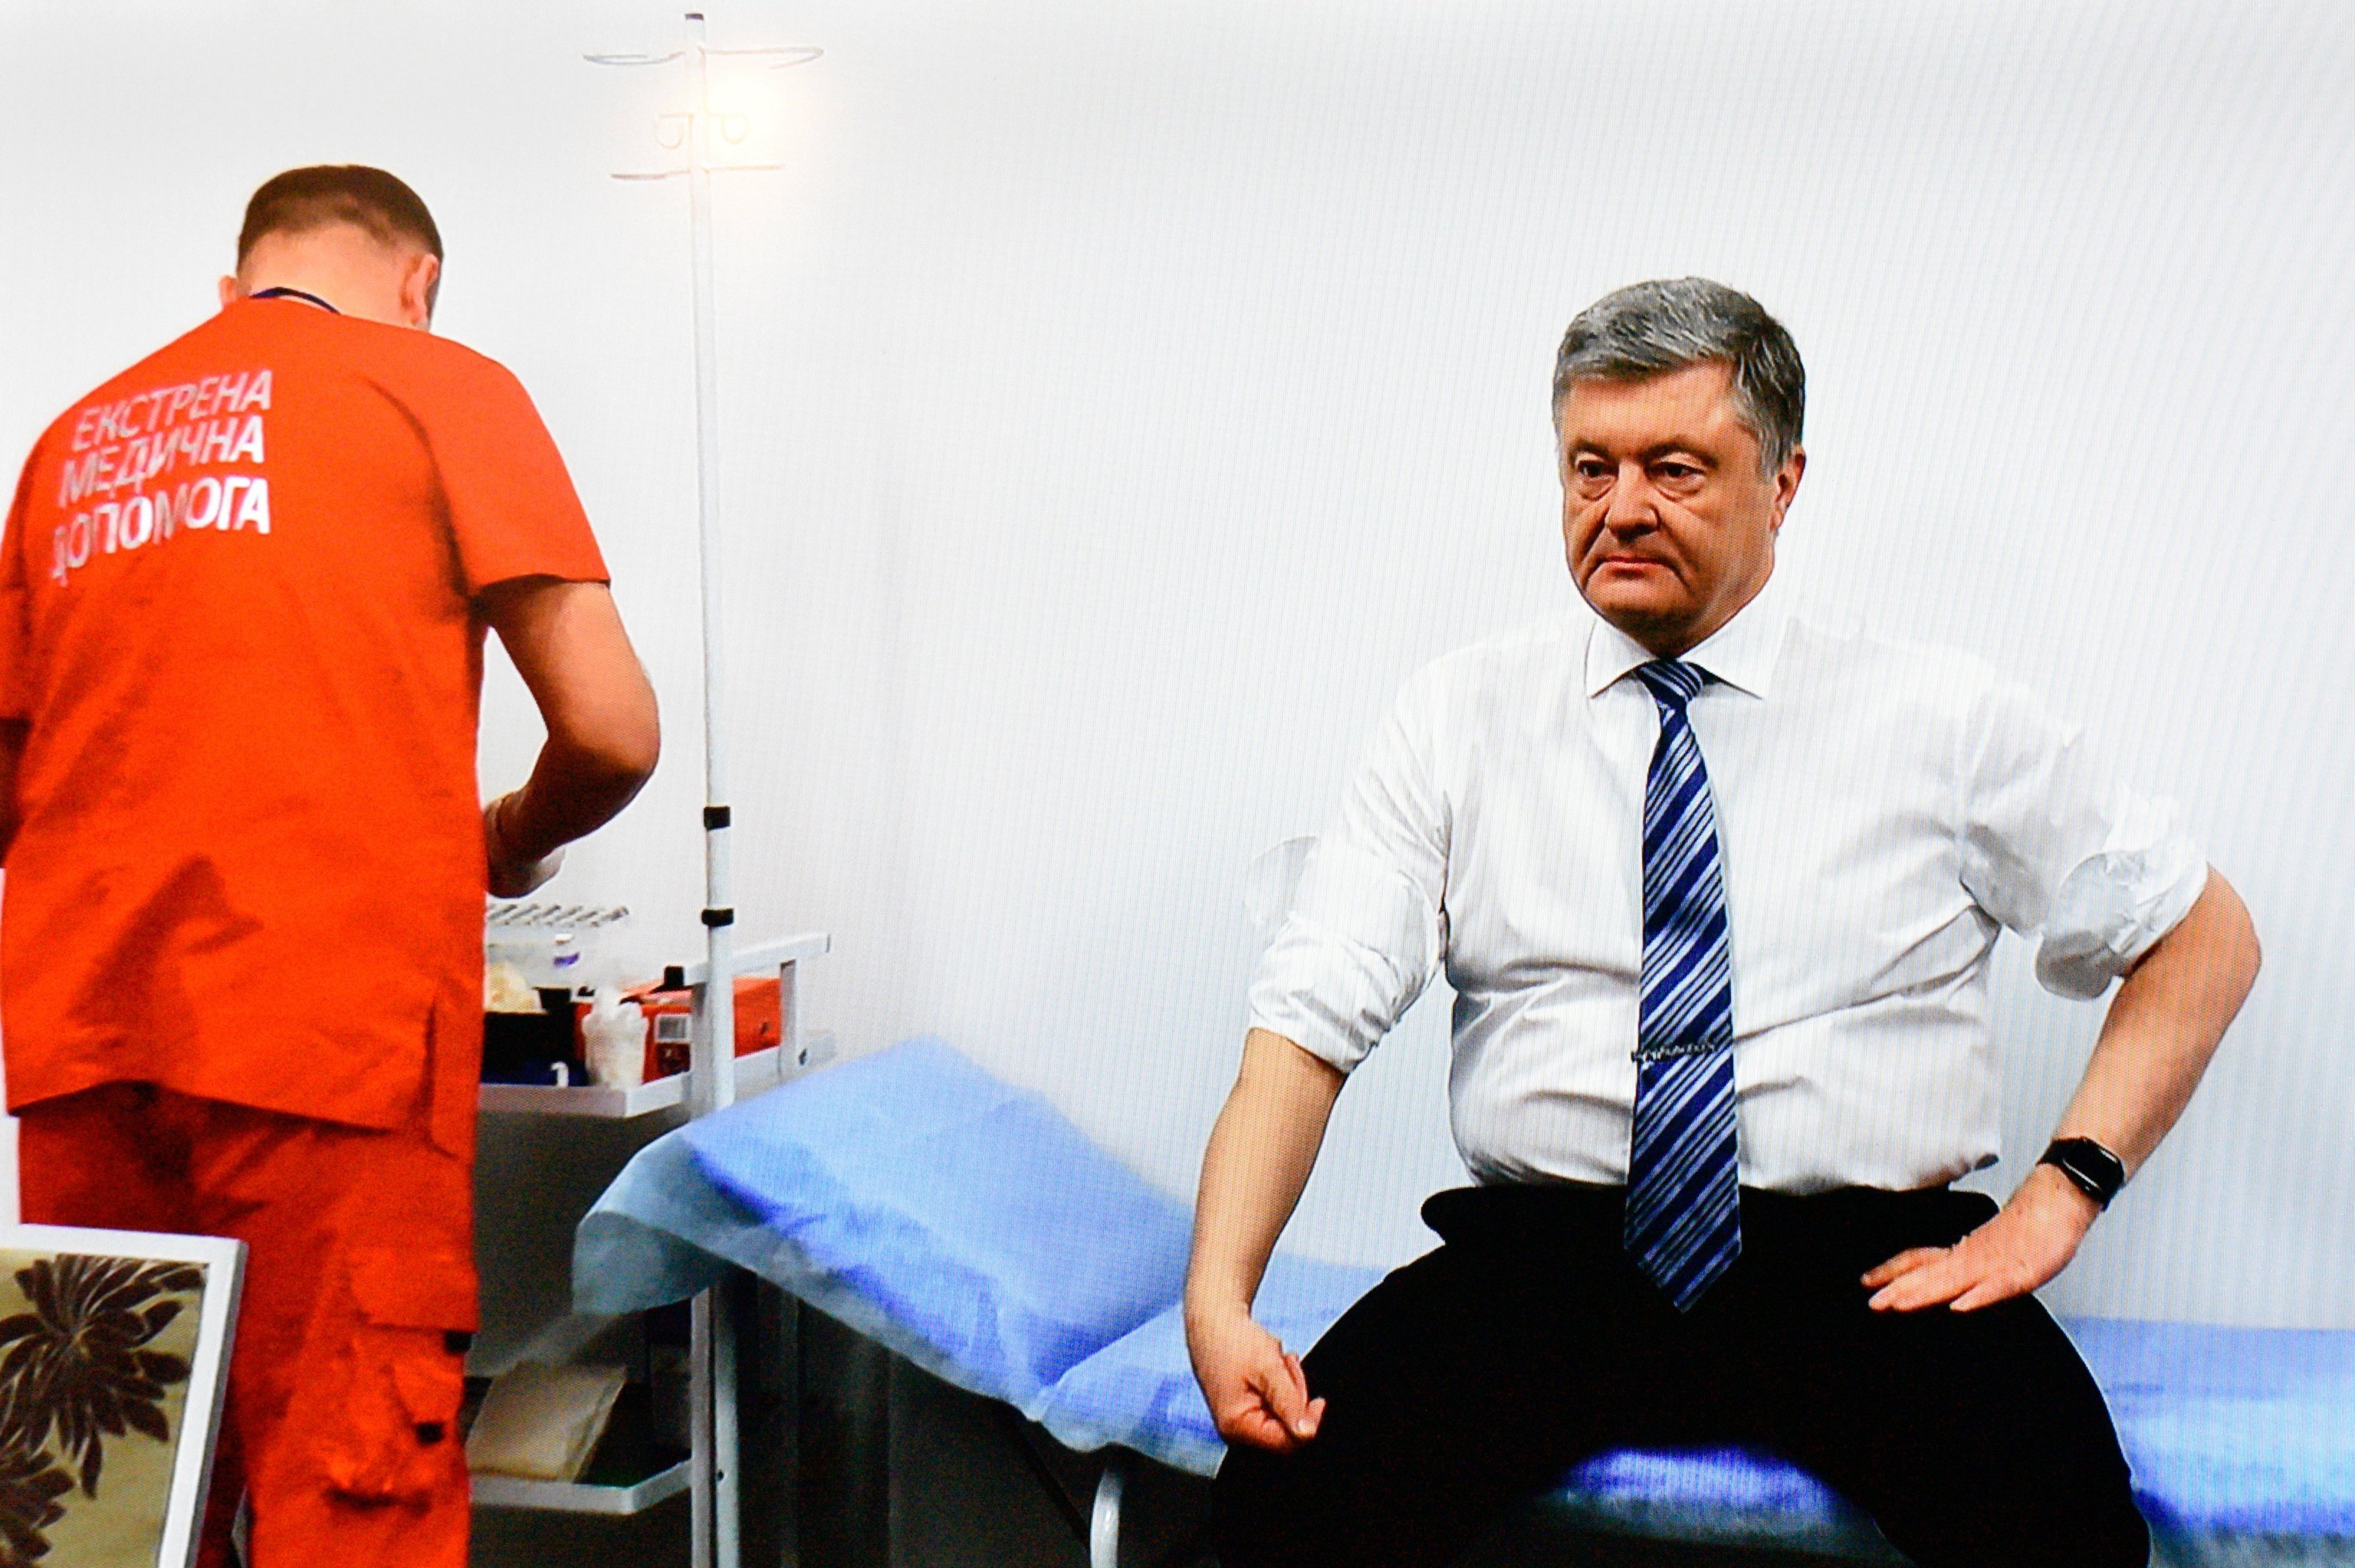 Кандидат в президенты Украины Петр Порошенко сдает анализ на алкоголь и наркотики